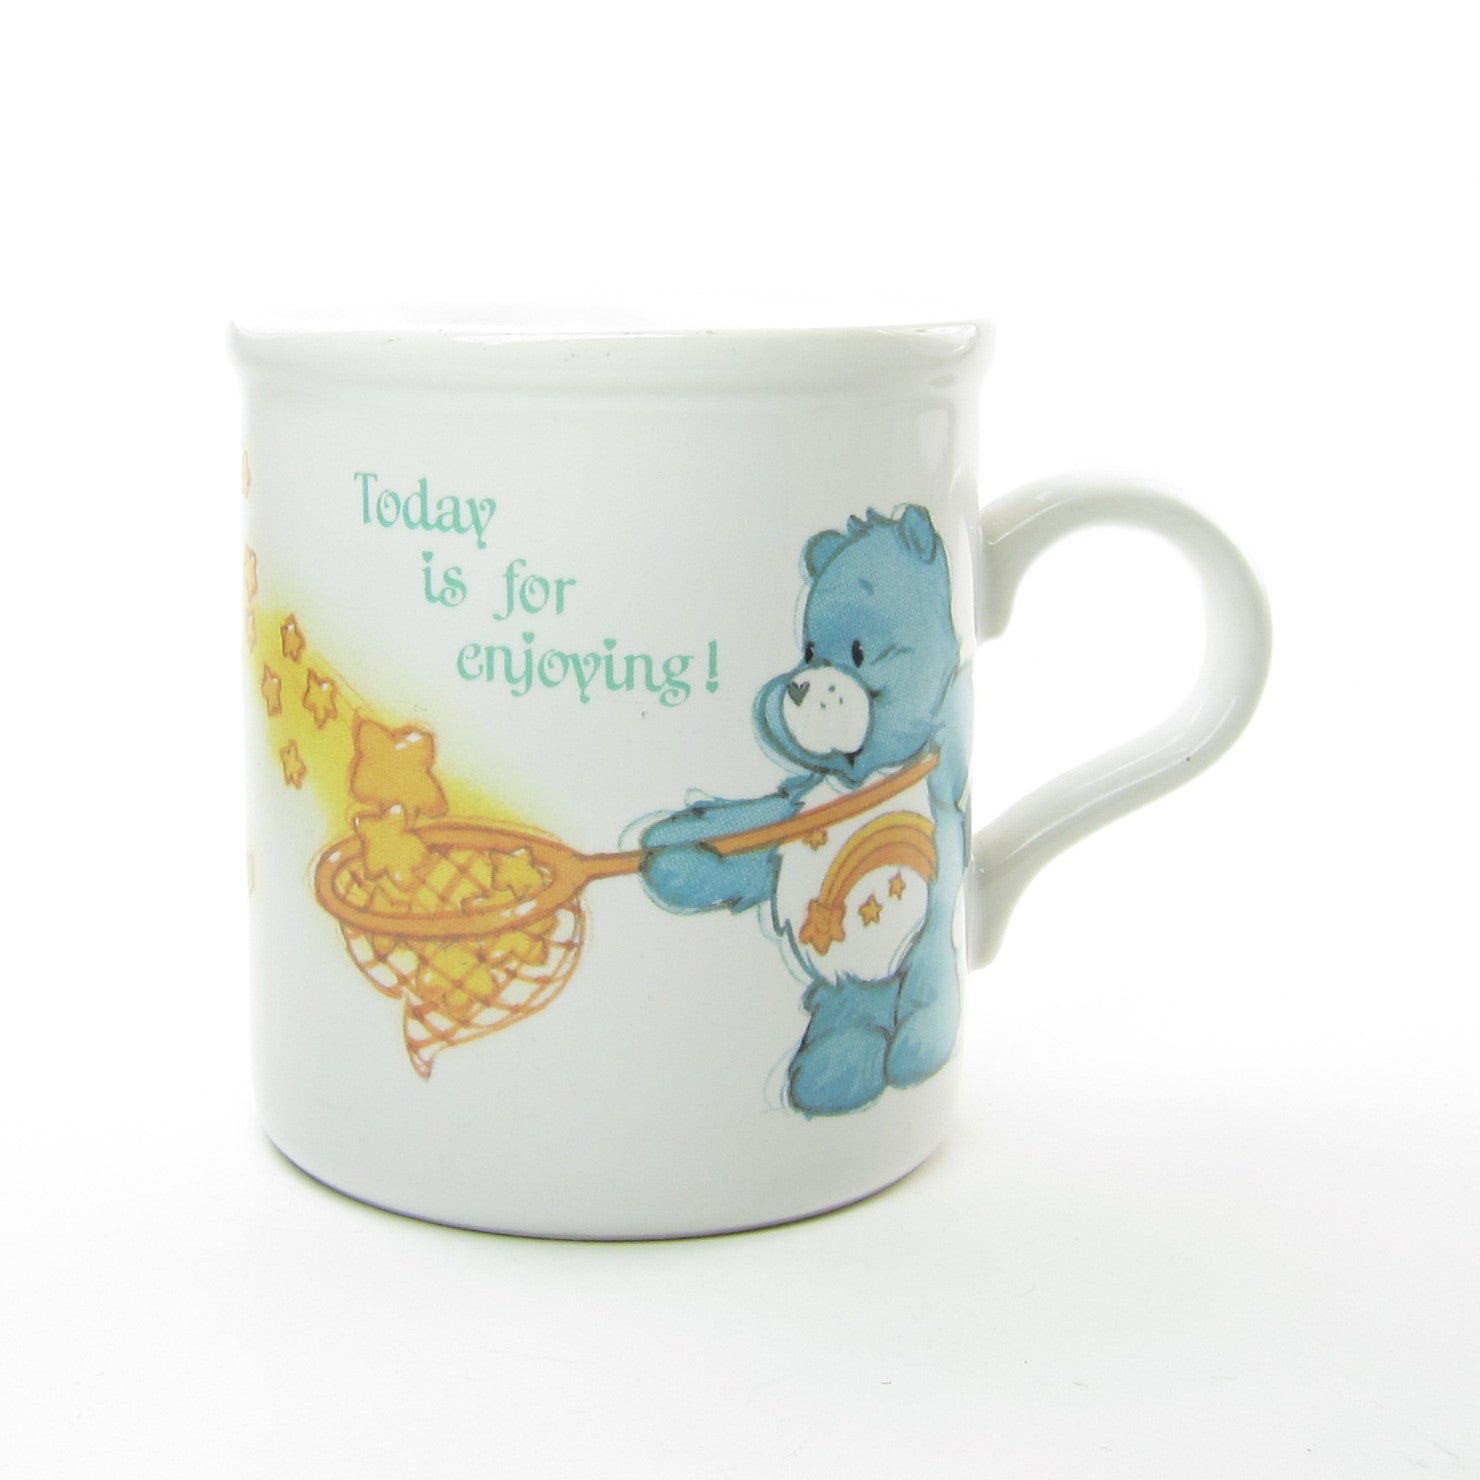 Care Bears mug "Today is for enjoying!"